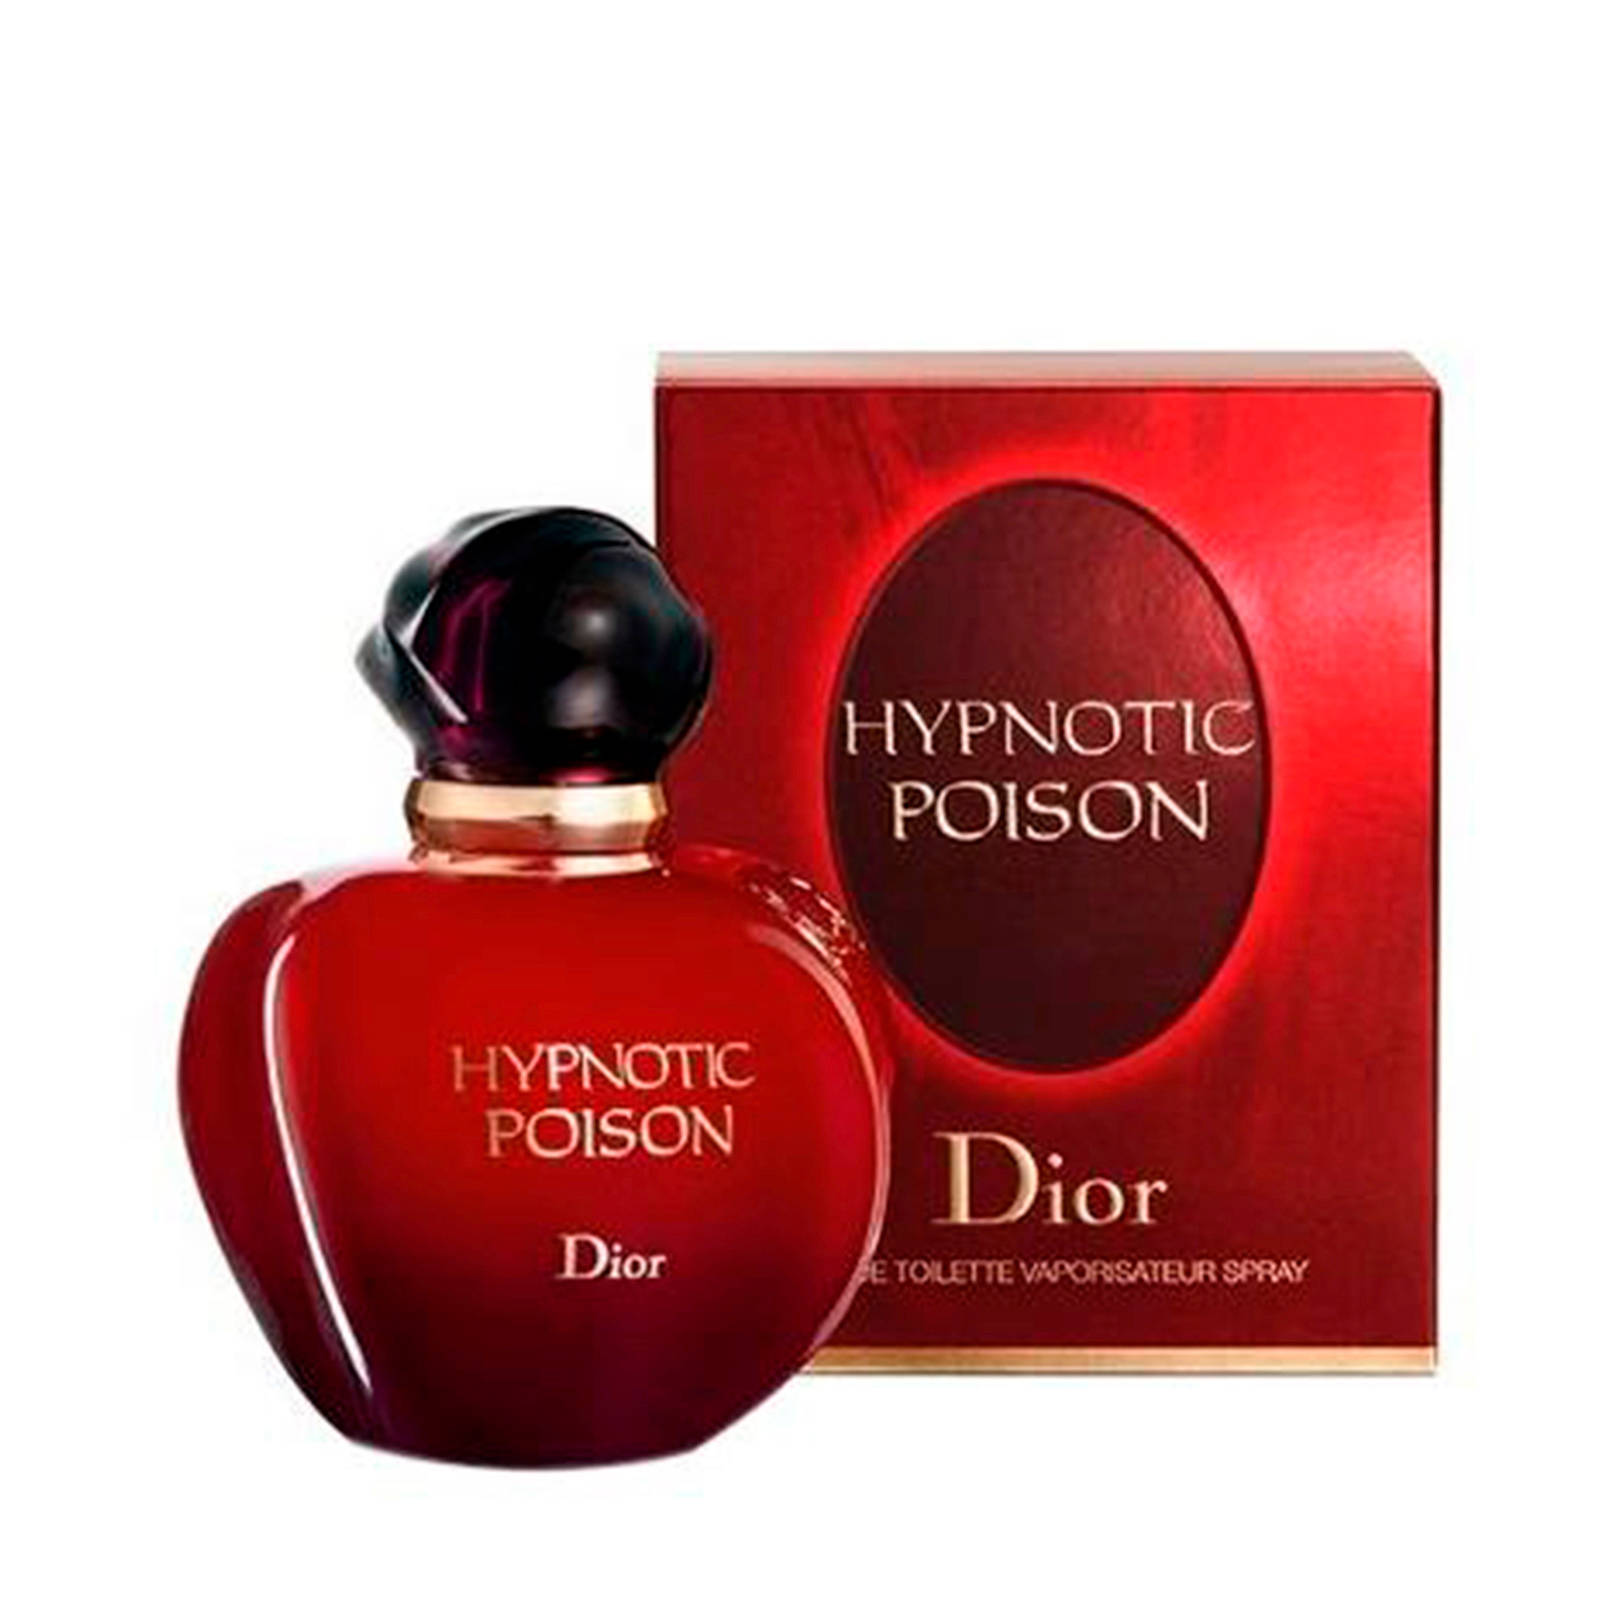 Dior Hypnotic Poison eau de toilette - 50 ml - 50 ml | wehkamp